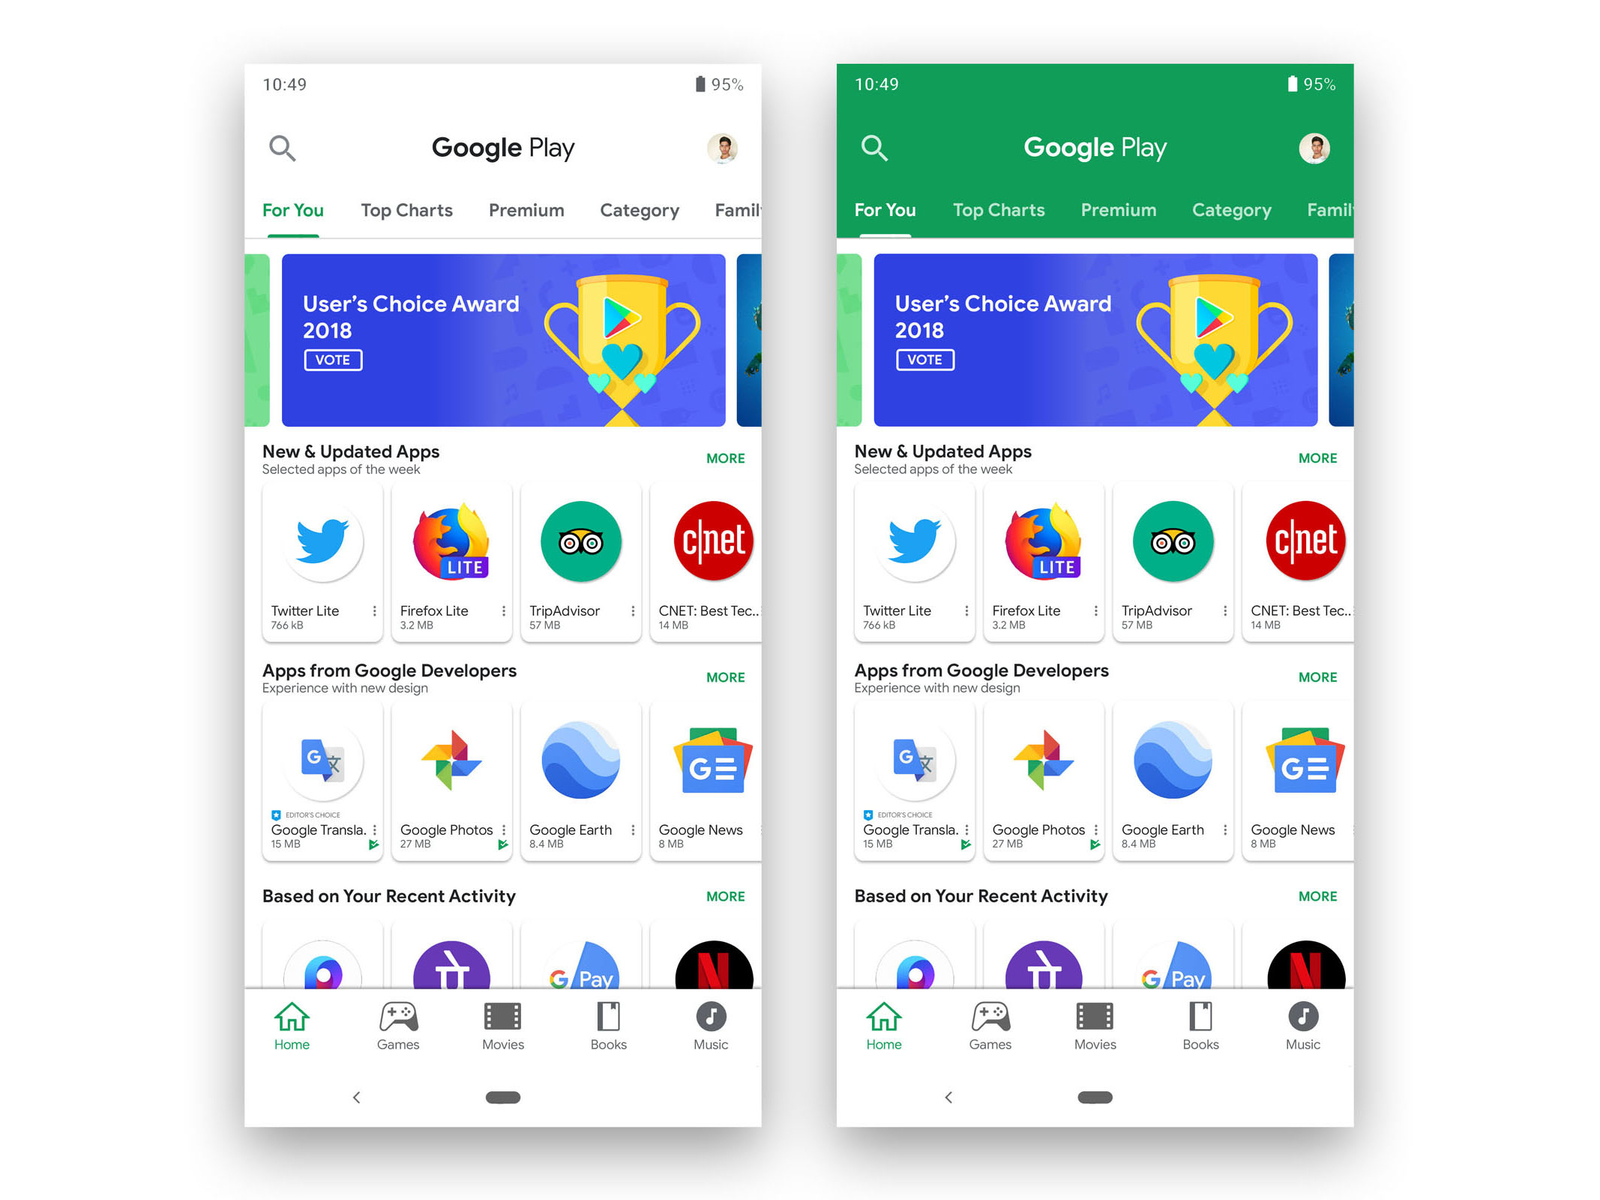 Google Play Store ganha novo visual com Material Design atualizado